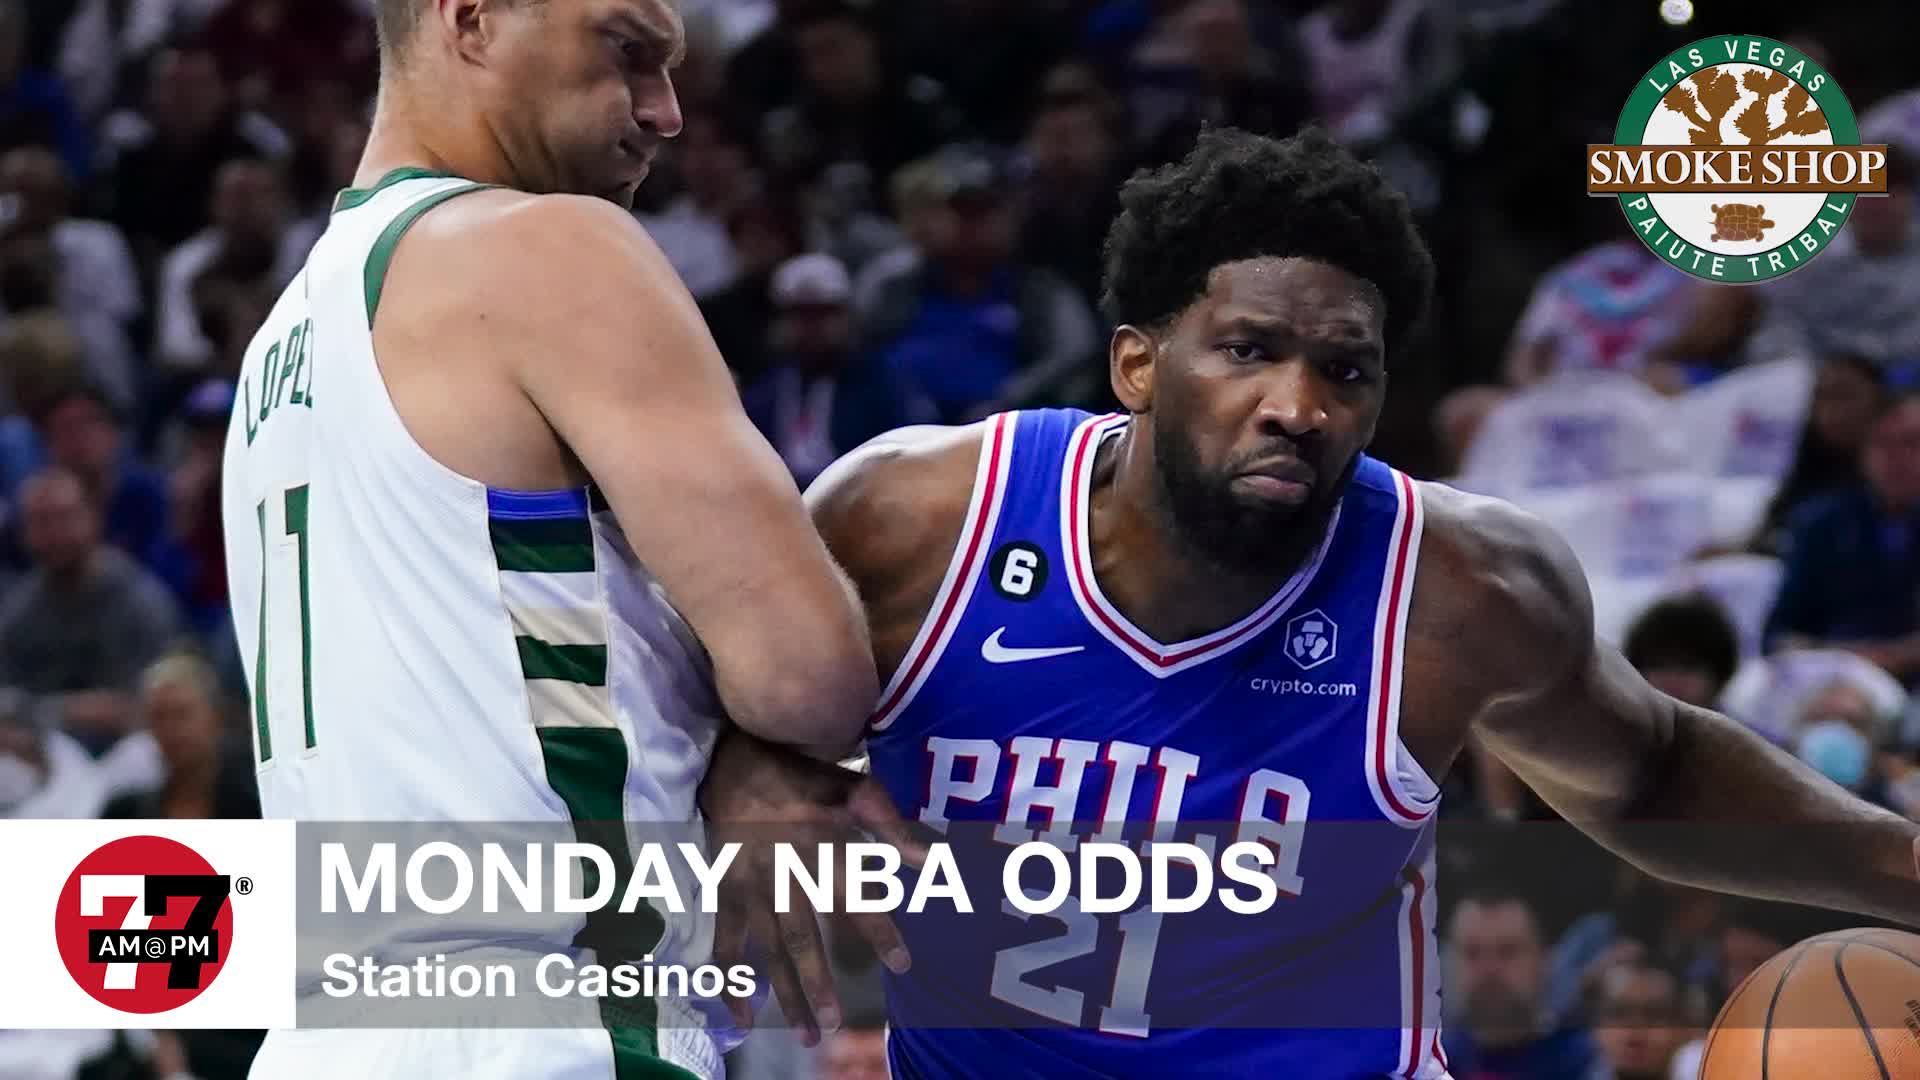 Monday NBA odds